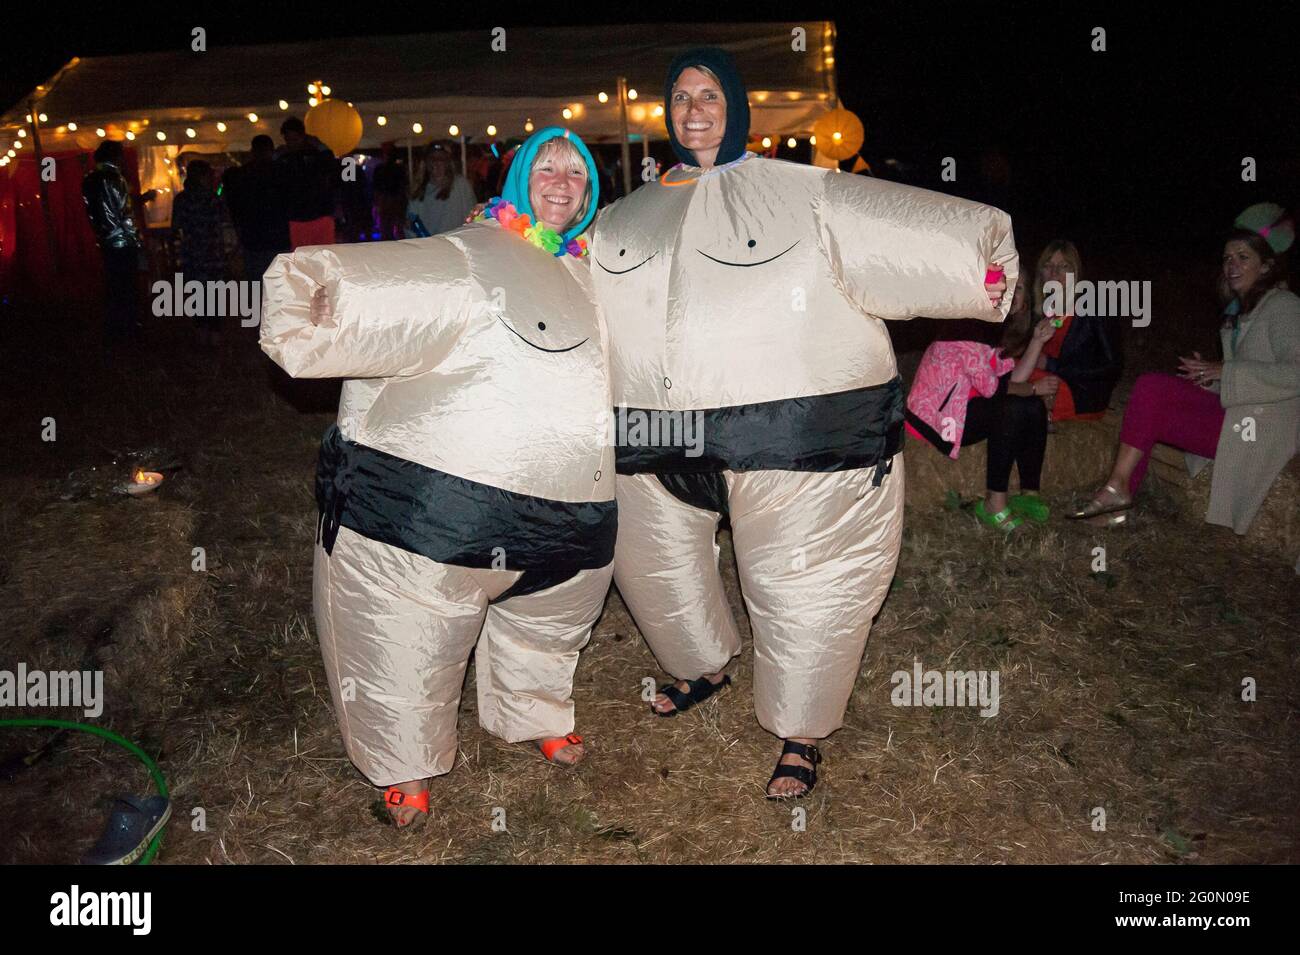 Zwei Frauen, die in aufblasbaren, aufblasbaren Sumo-Wrestler-Kostümen  verkleidet sind Stockfotografie - Alamy